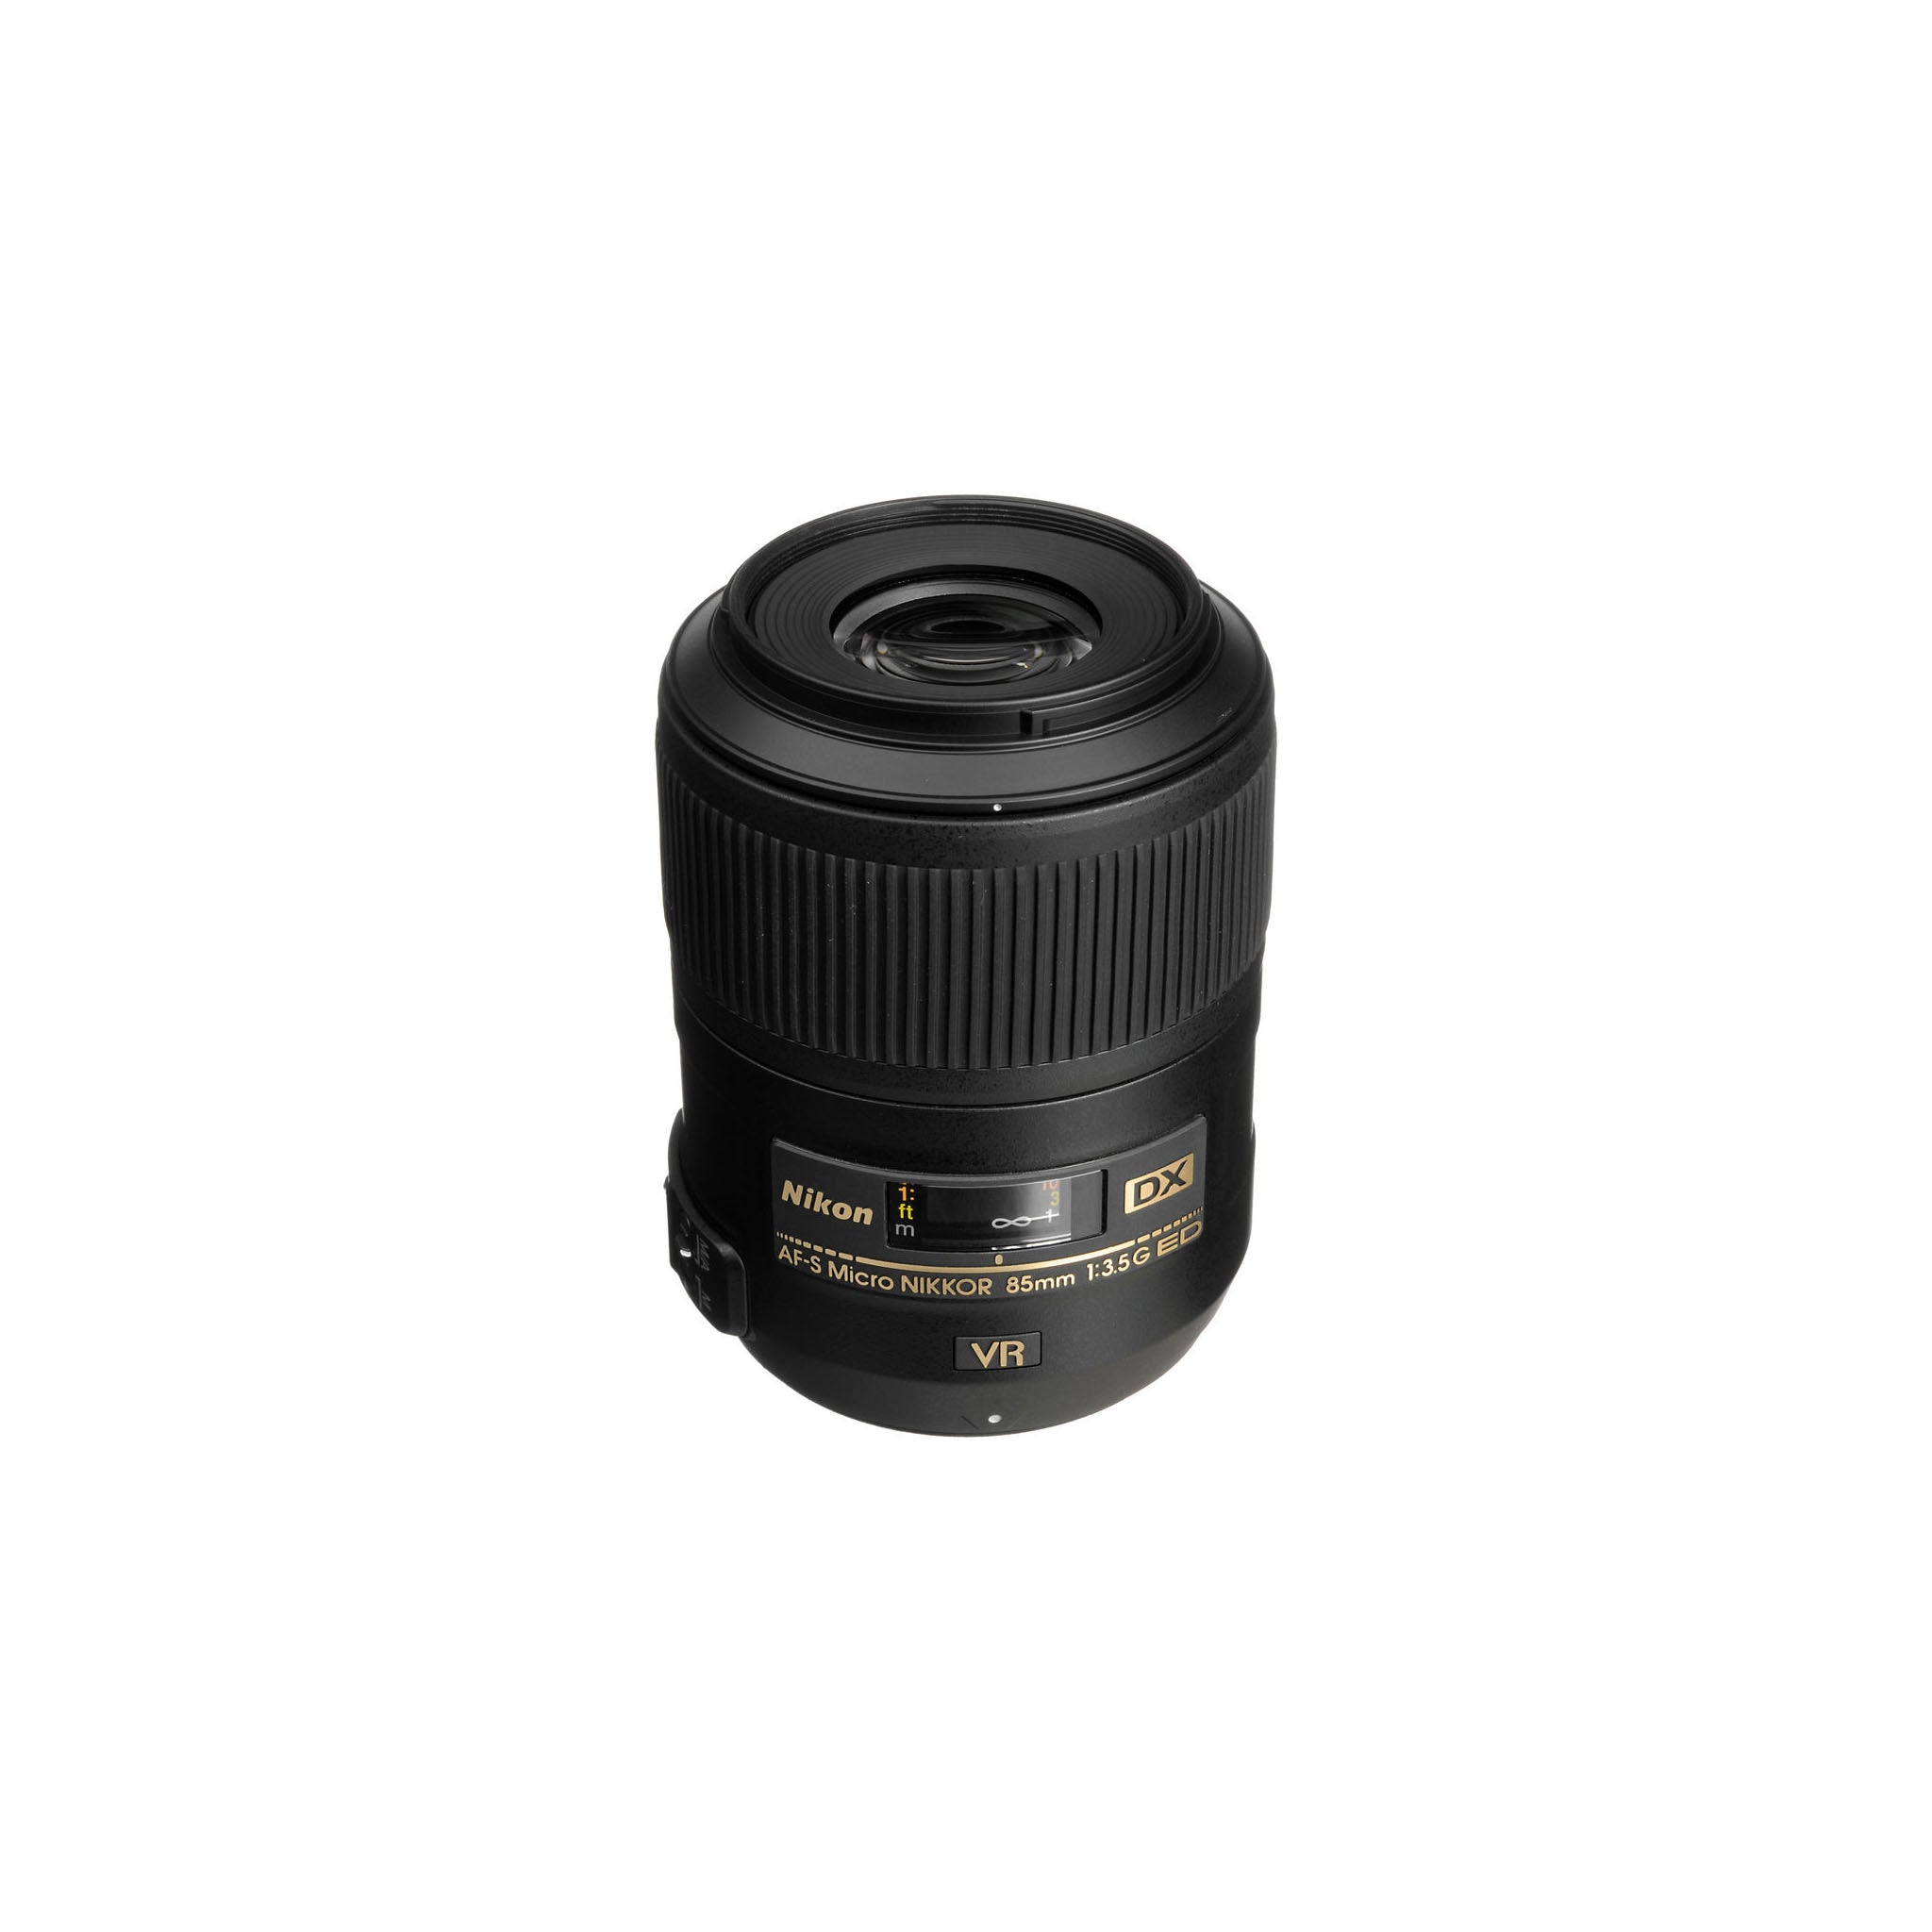 Nikon AF-S 85mm F3.5G ED VR DX Micro Lens